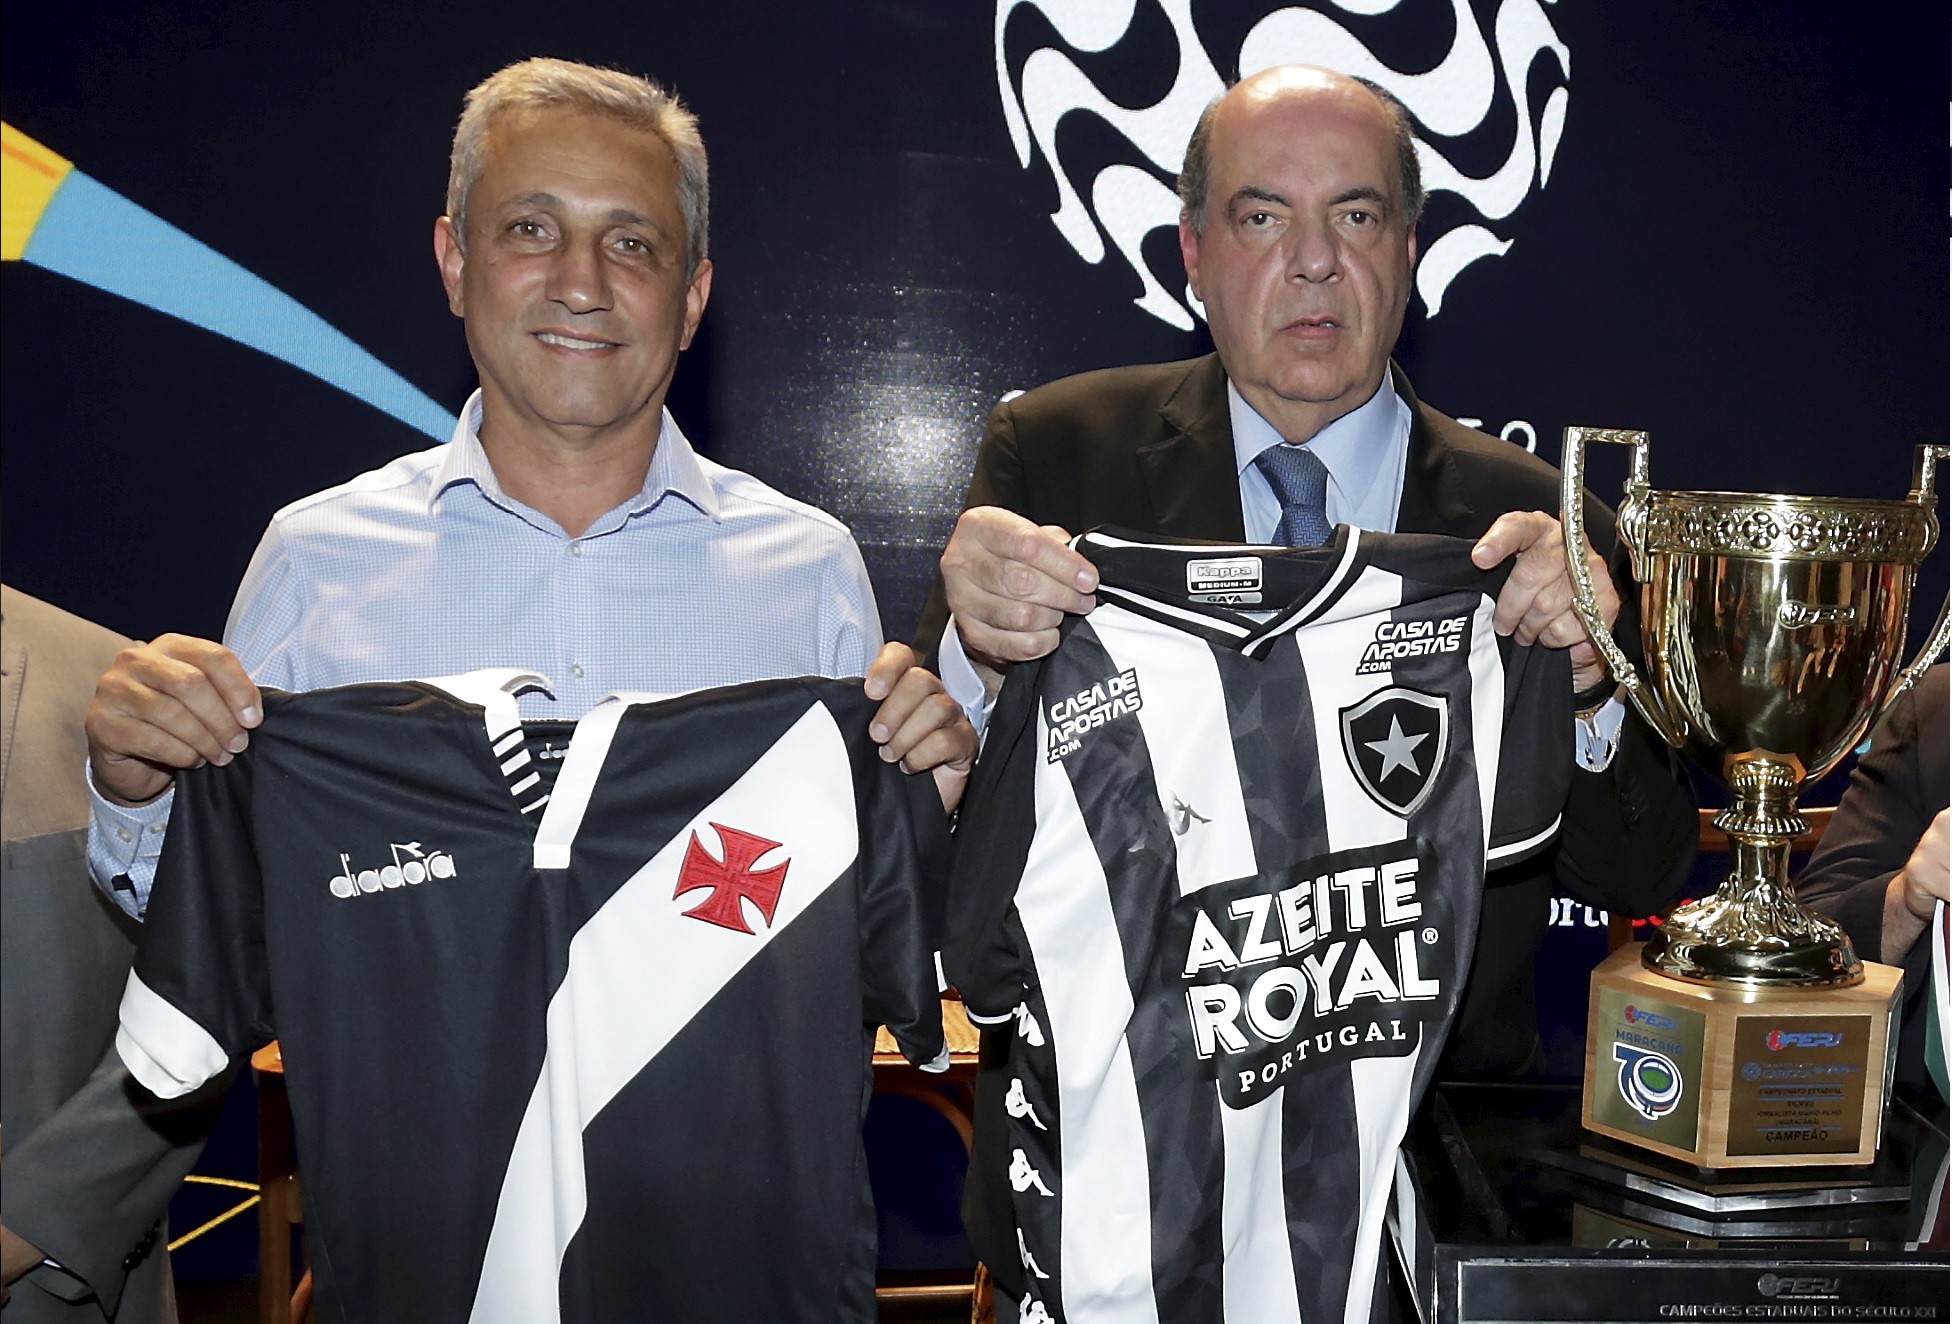 Alexandre Campello, presidente do Vasco, e Nelson Mufarrej, presidente do Botafogo